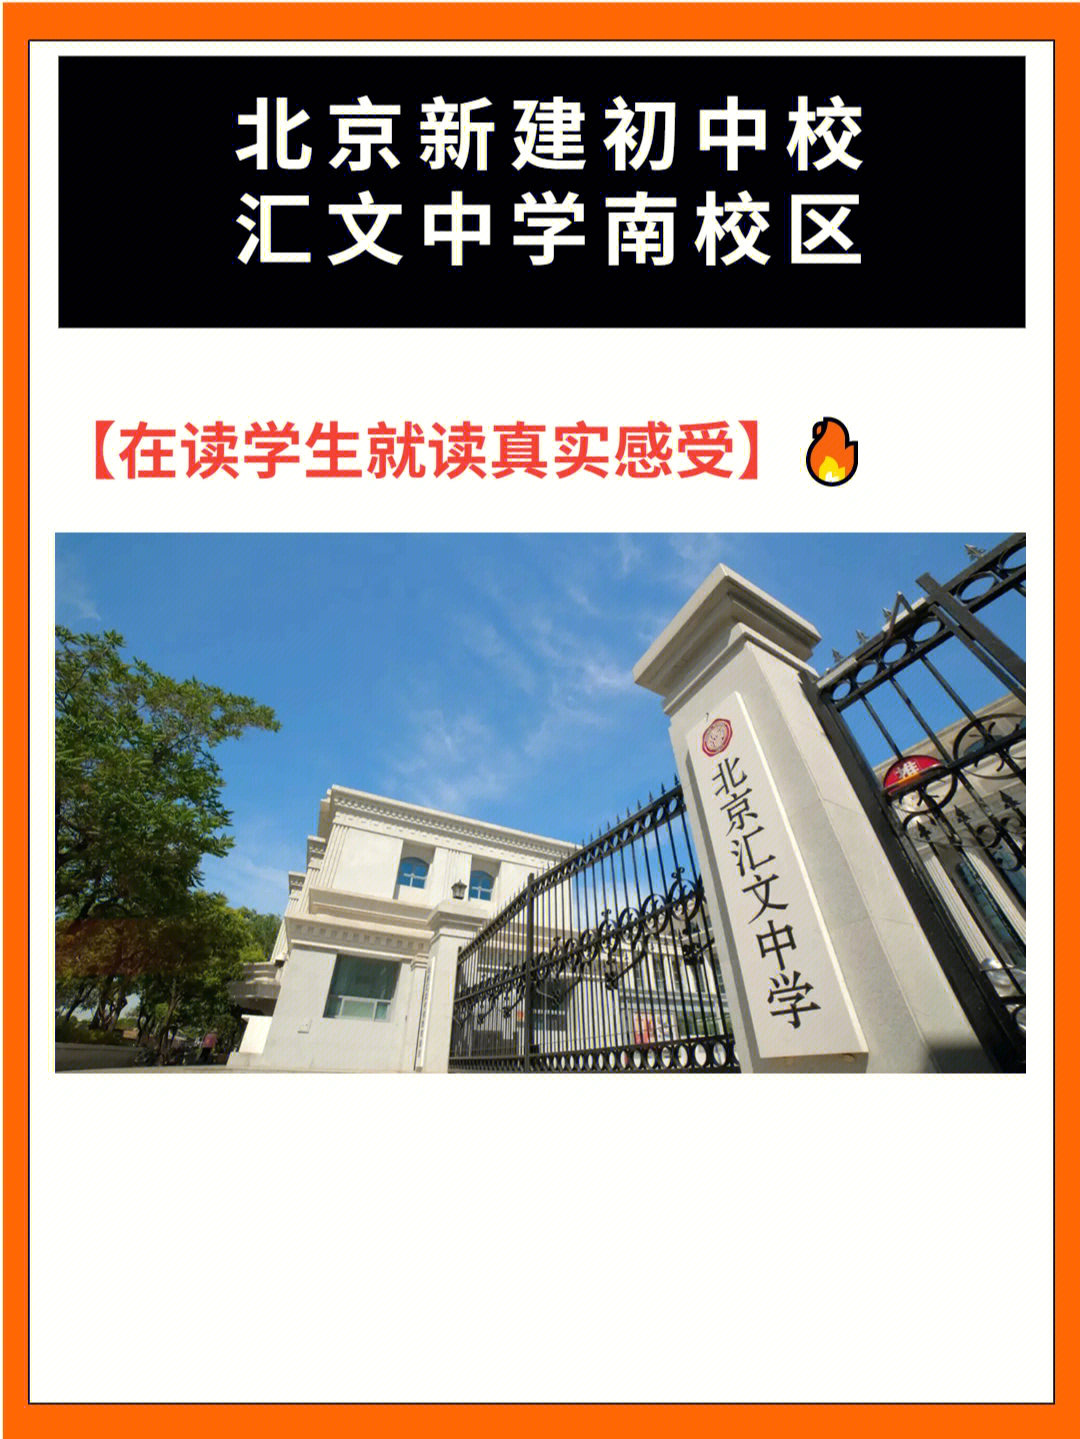 北京文汇中学校徽图片